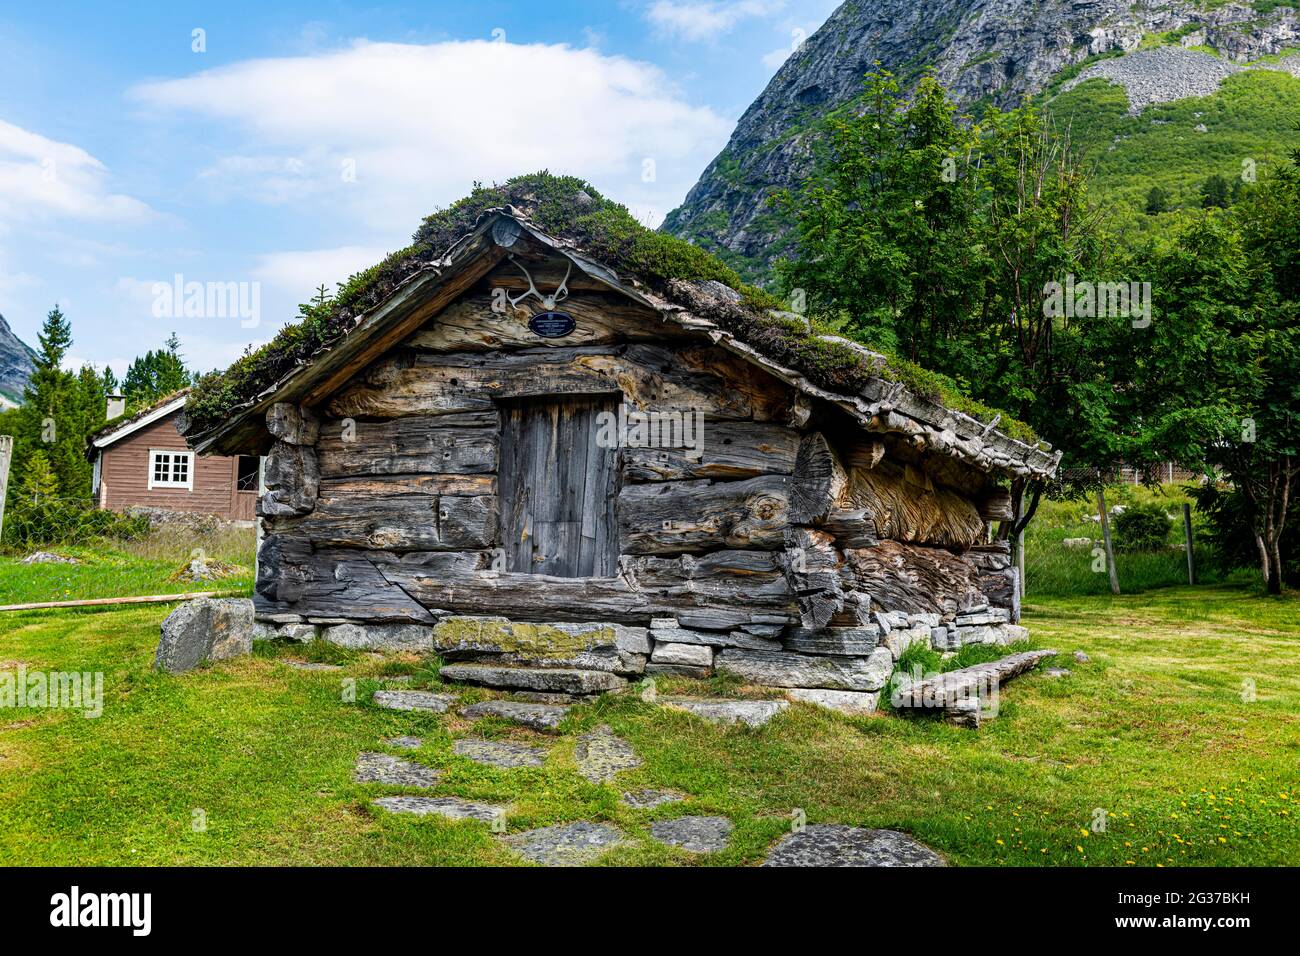 Historic huts, Trollstigen mountain road, Valldal, Norway Stock Photo